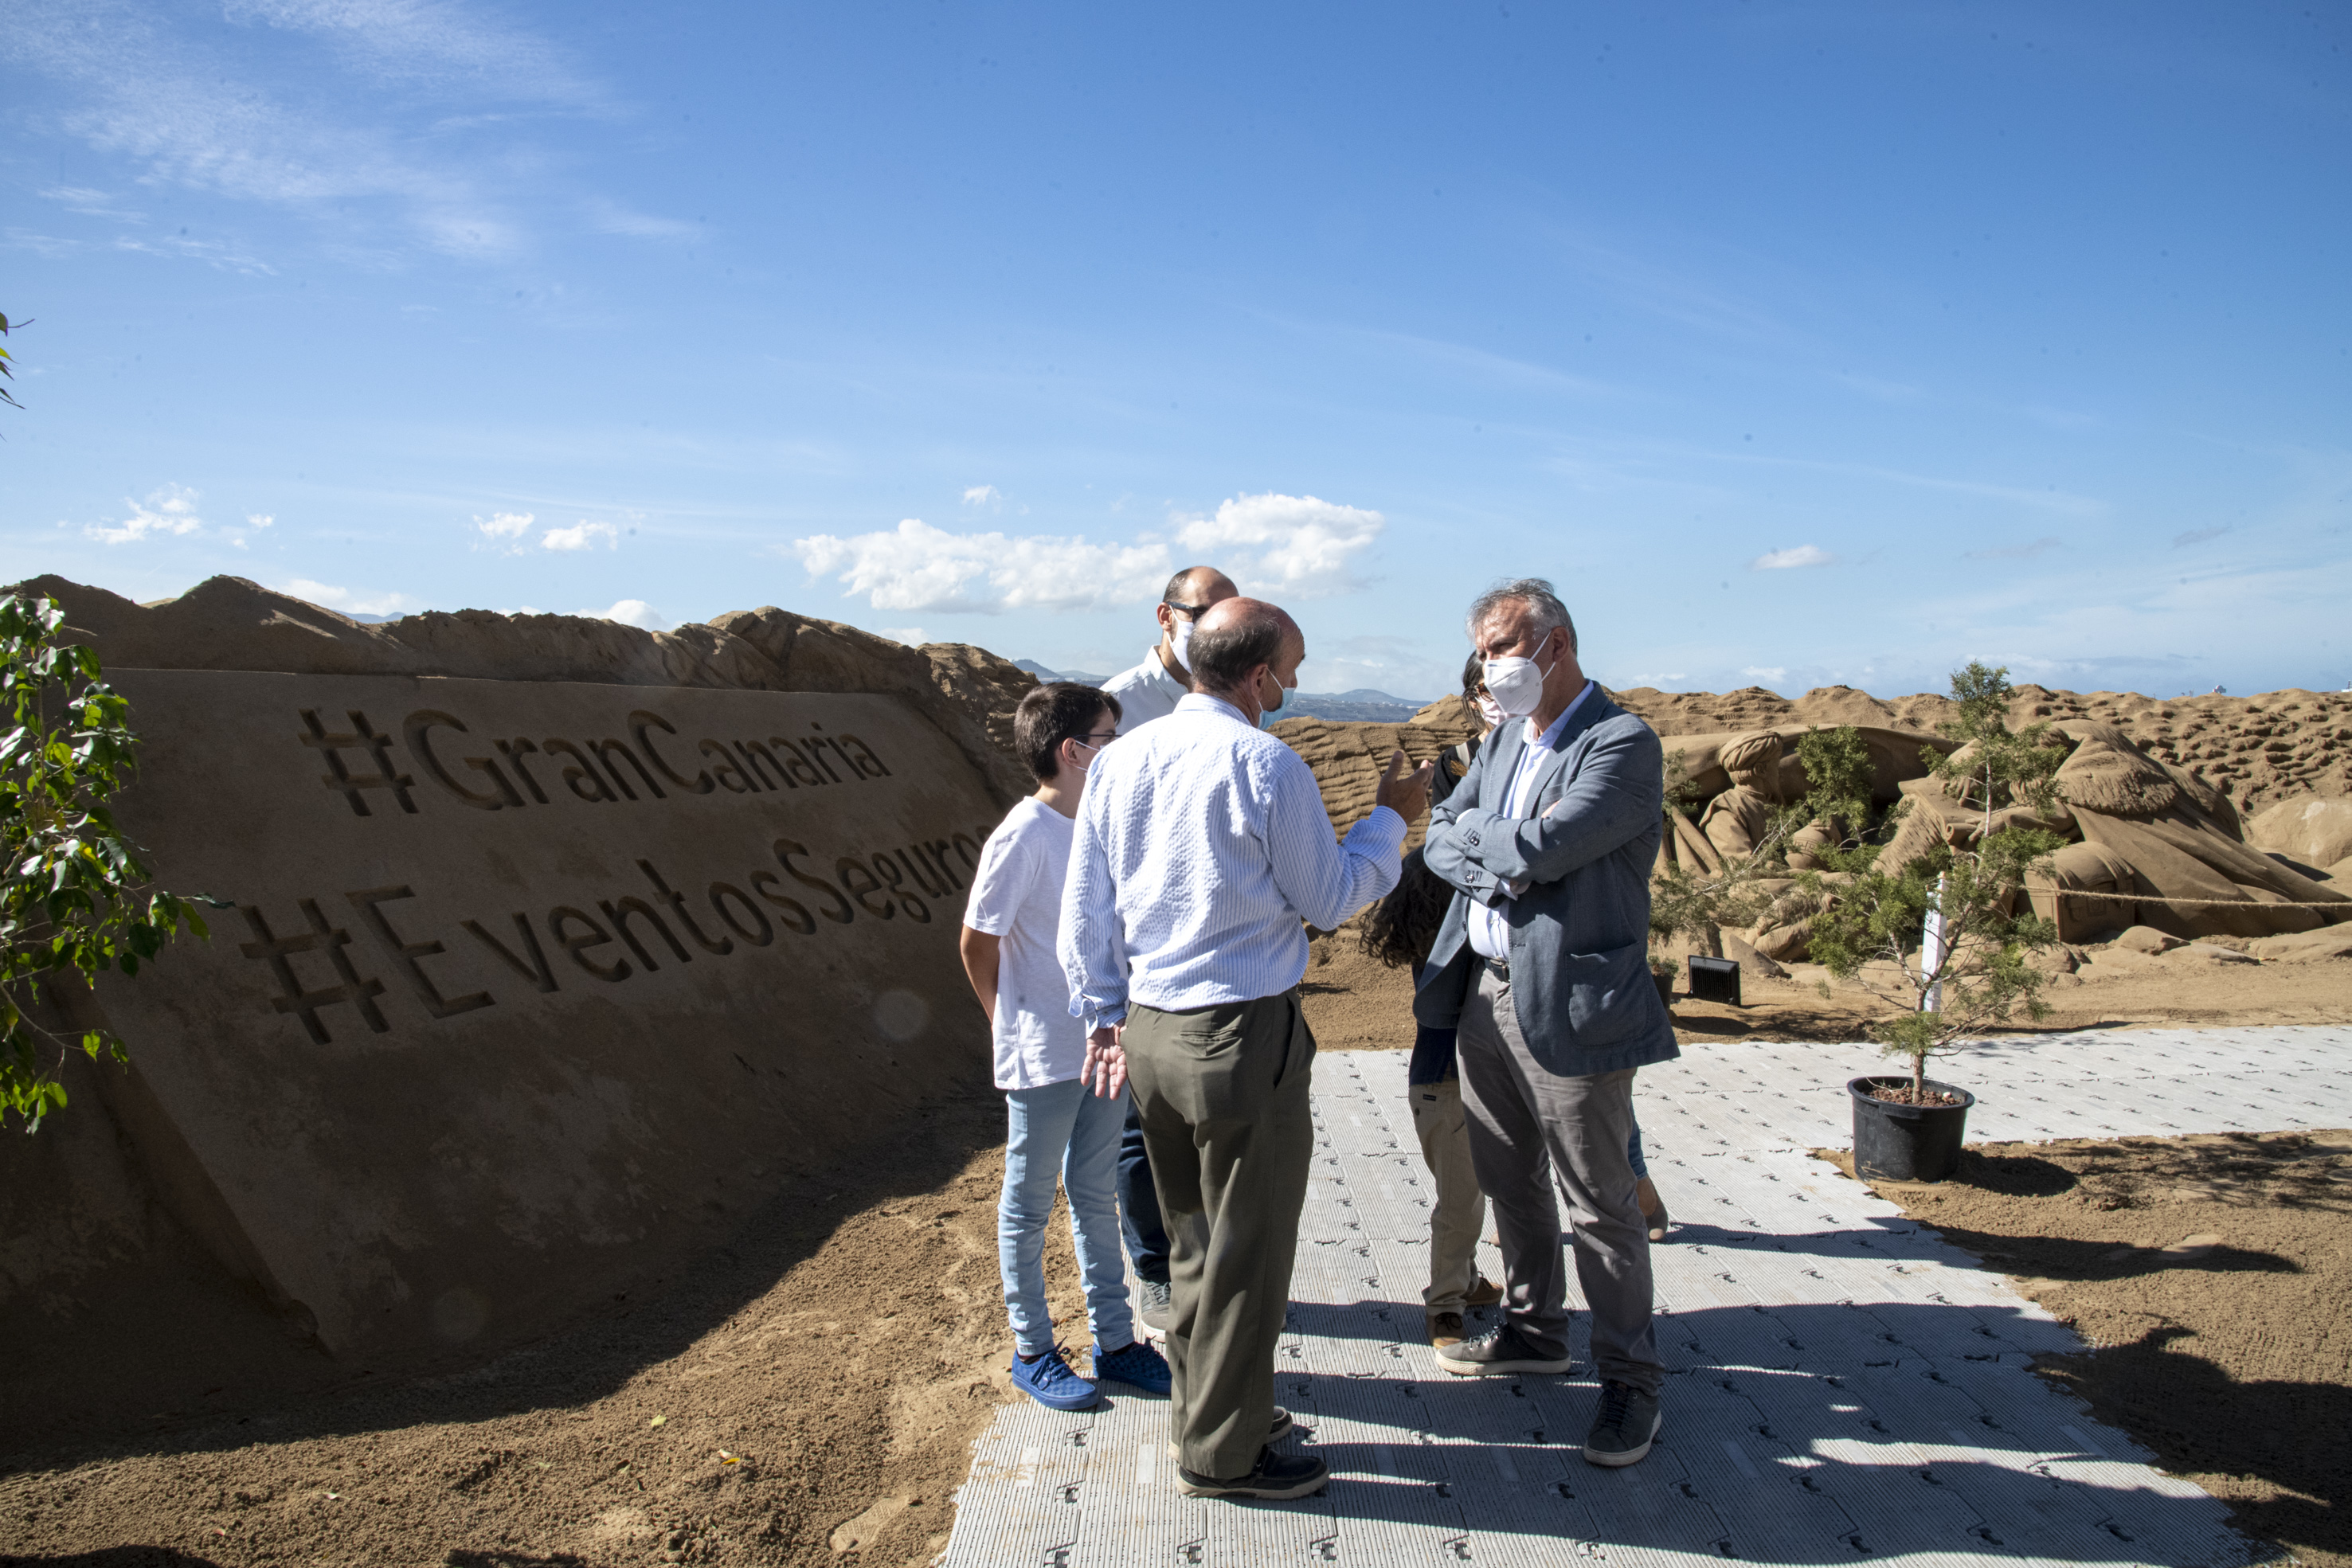 Ángel Víctor Torres visita el Belén de arena de la playa de Las Canteras / CanariasNoticias.es